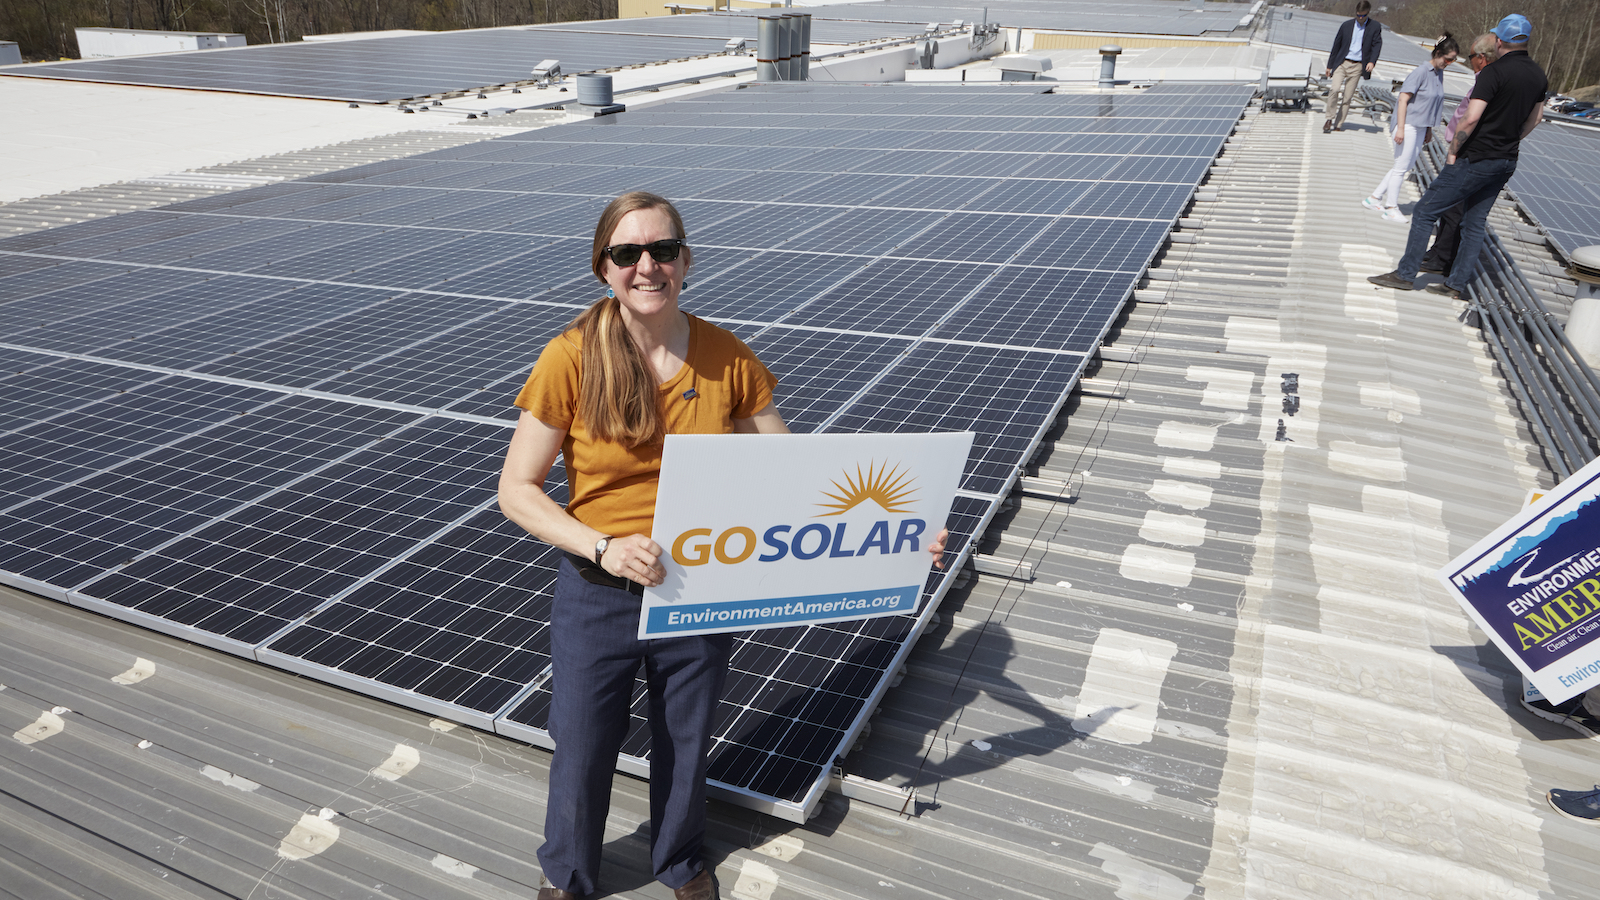 美国环境署100%可再生能源高级主管约翰娜·诺伊曼站在一个覆盖着太阳能电池板的仓库屋顶上，手里举着一个牌子，上面写着 